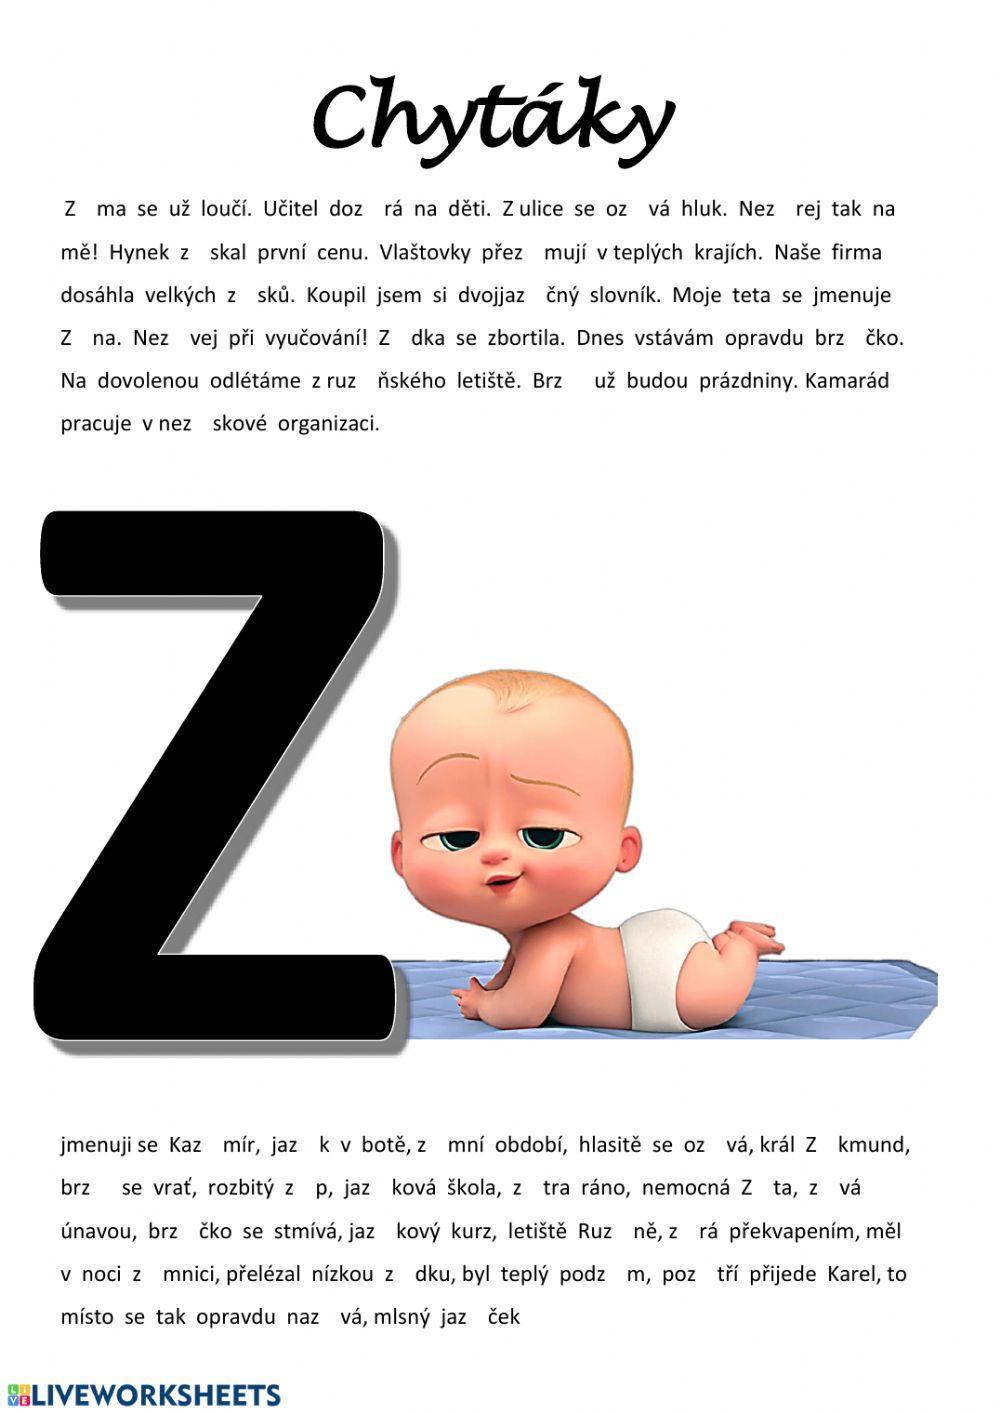 Vyjmenovaná slova Z